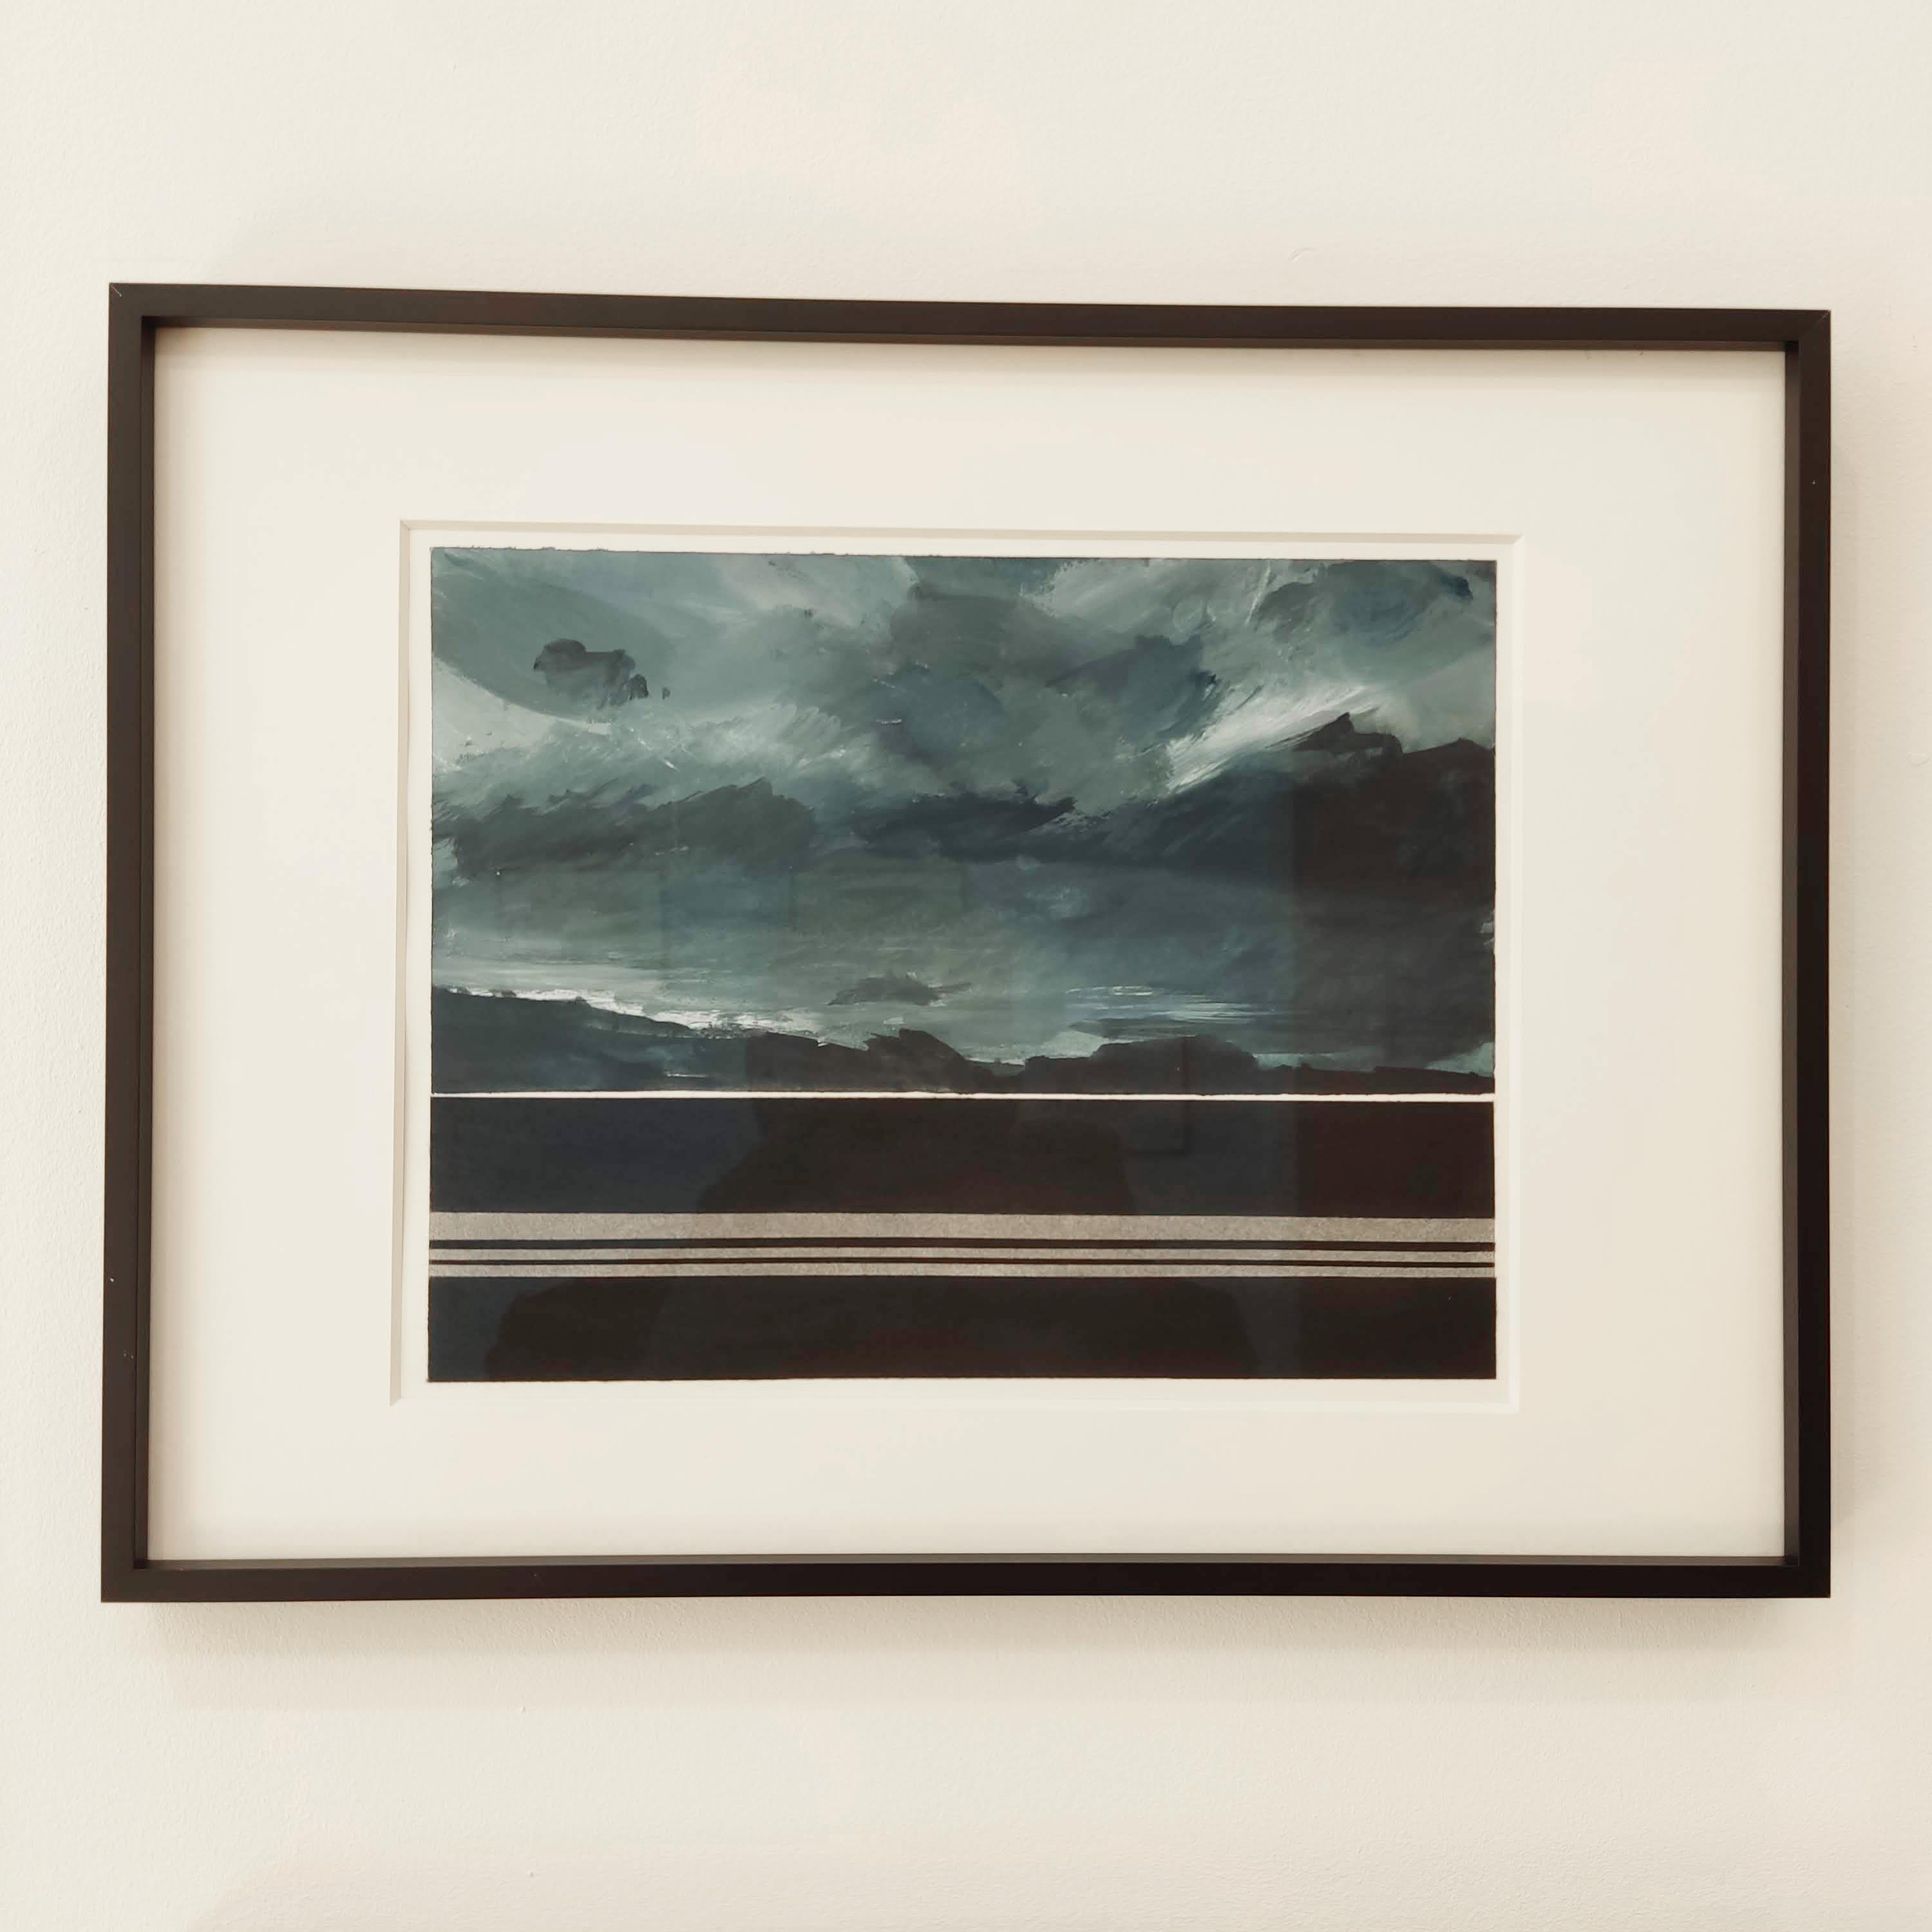 Horizon - Painting, Watercolour, Sea Coast Landscape, Britany - Black Landscape Painting by Fabien Granet